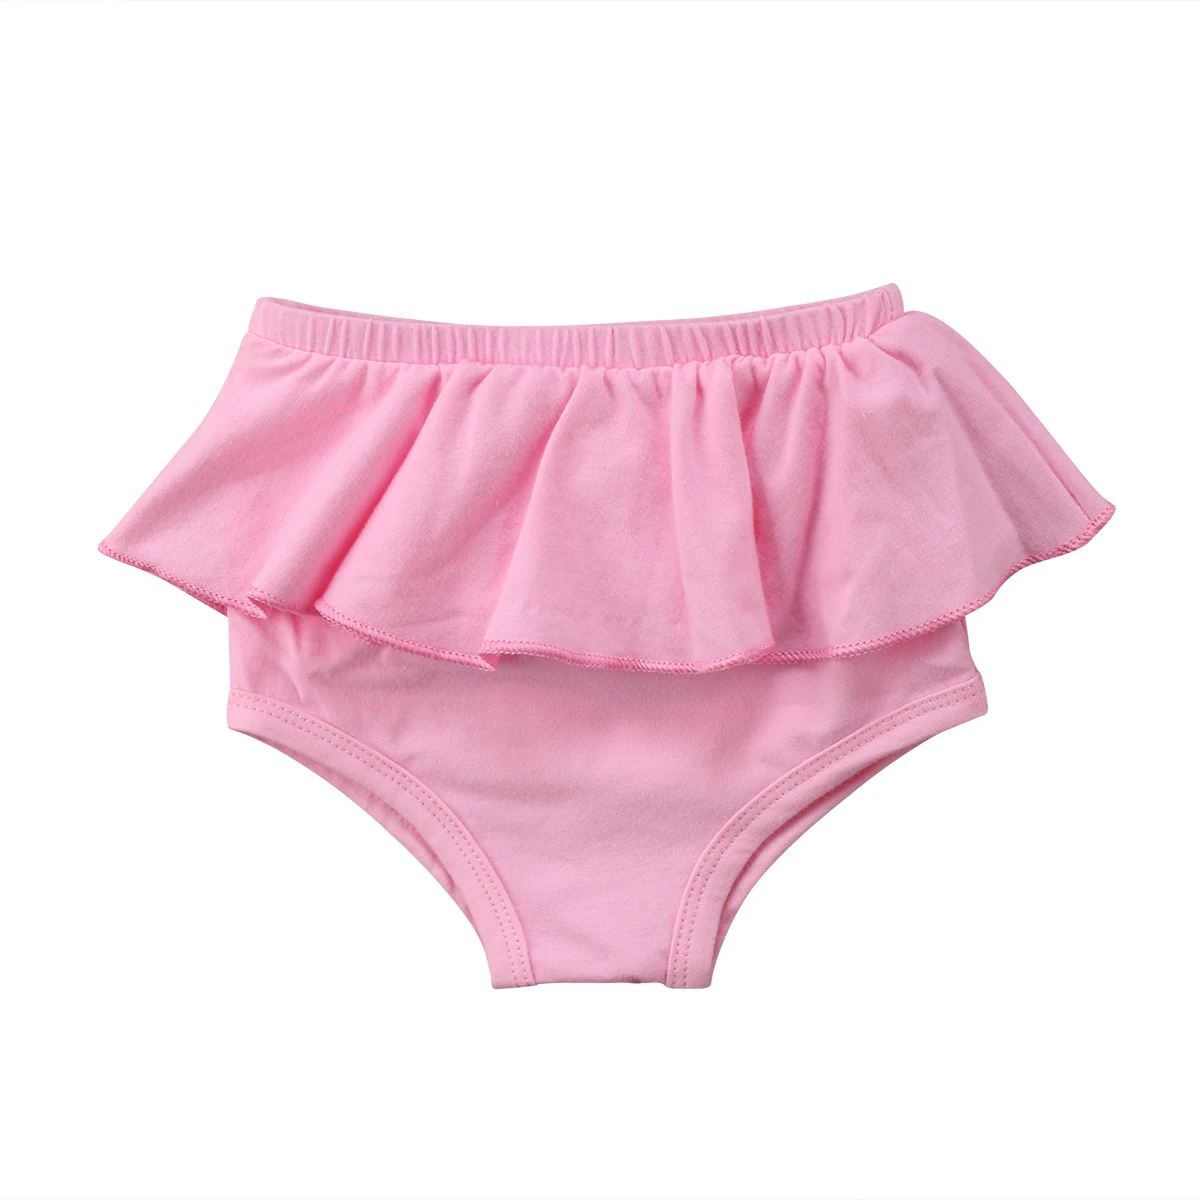 Лето; Симпатичная Модная одежда для новорожденных Одежда для детей и малышей Шорты-шаровары для девочек, короткие трусики/штаны на подгузник Асимметричная юбка шаровары трусики на возраст от 0 до 24 месяцев - Цвет: Розовый